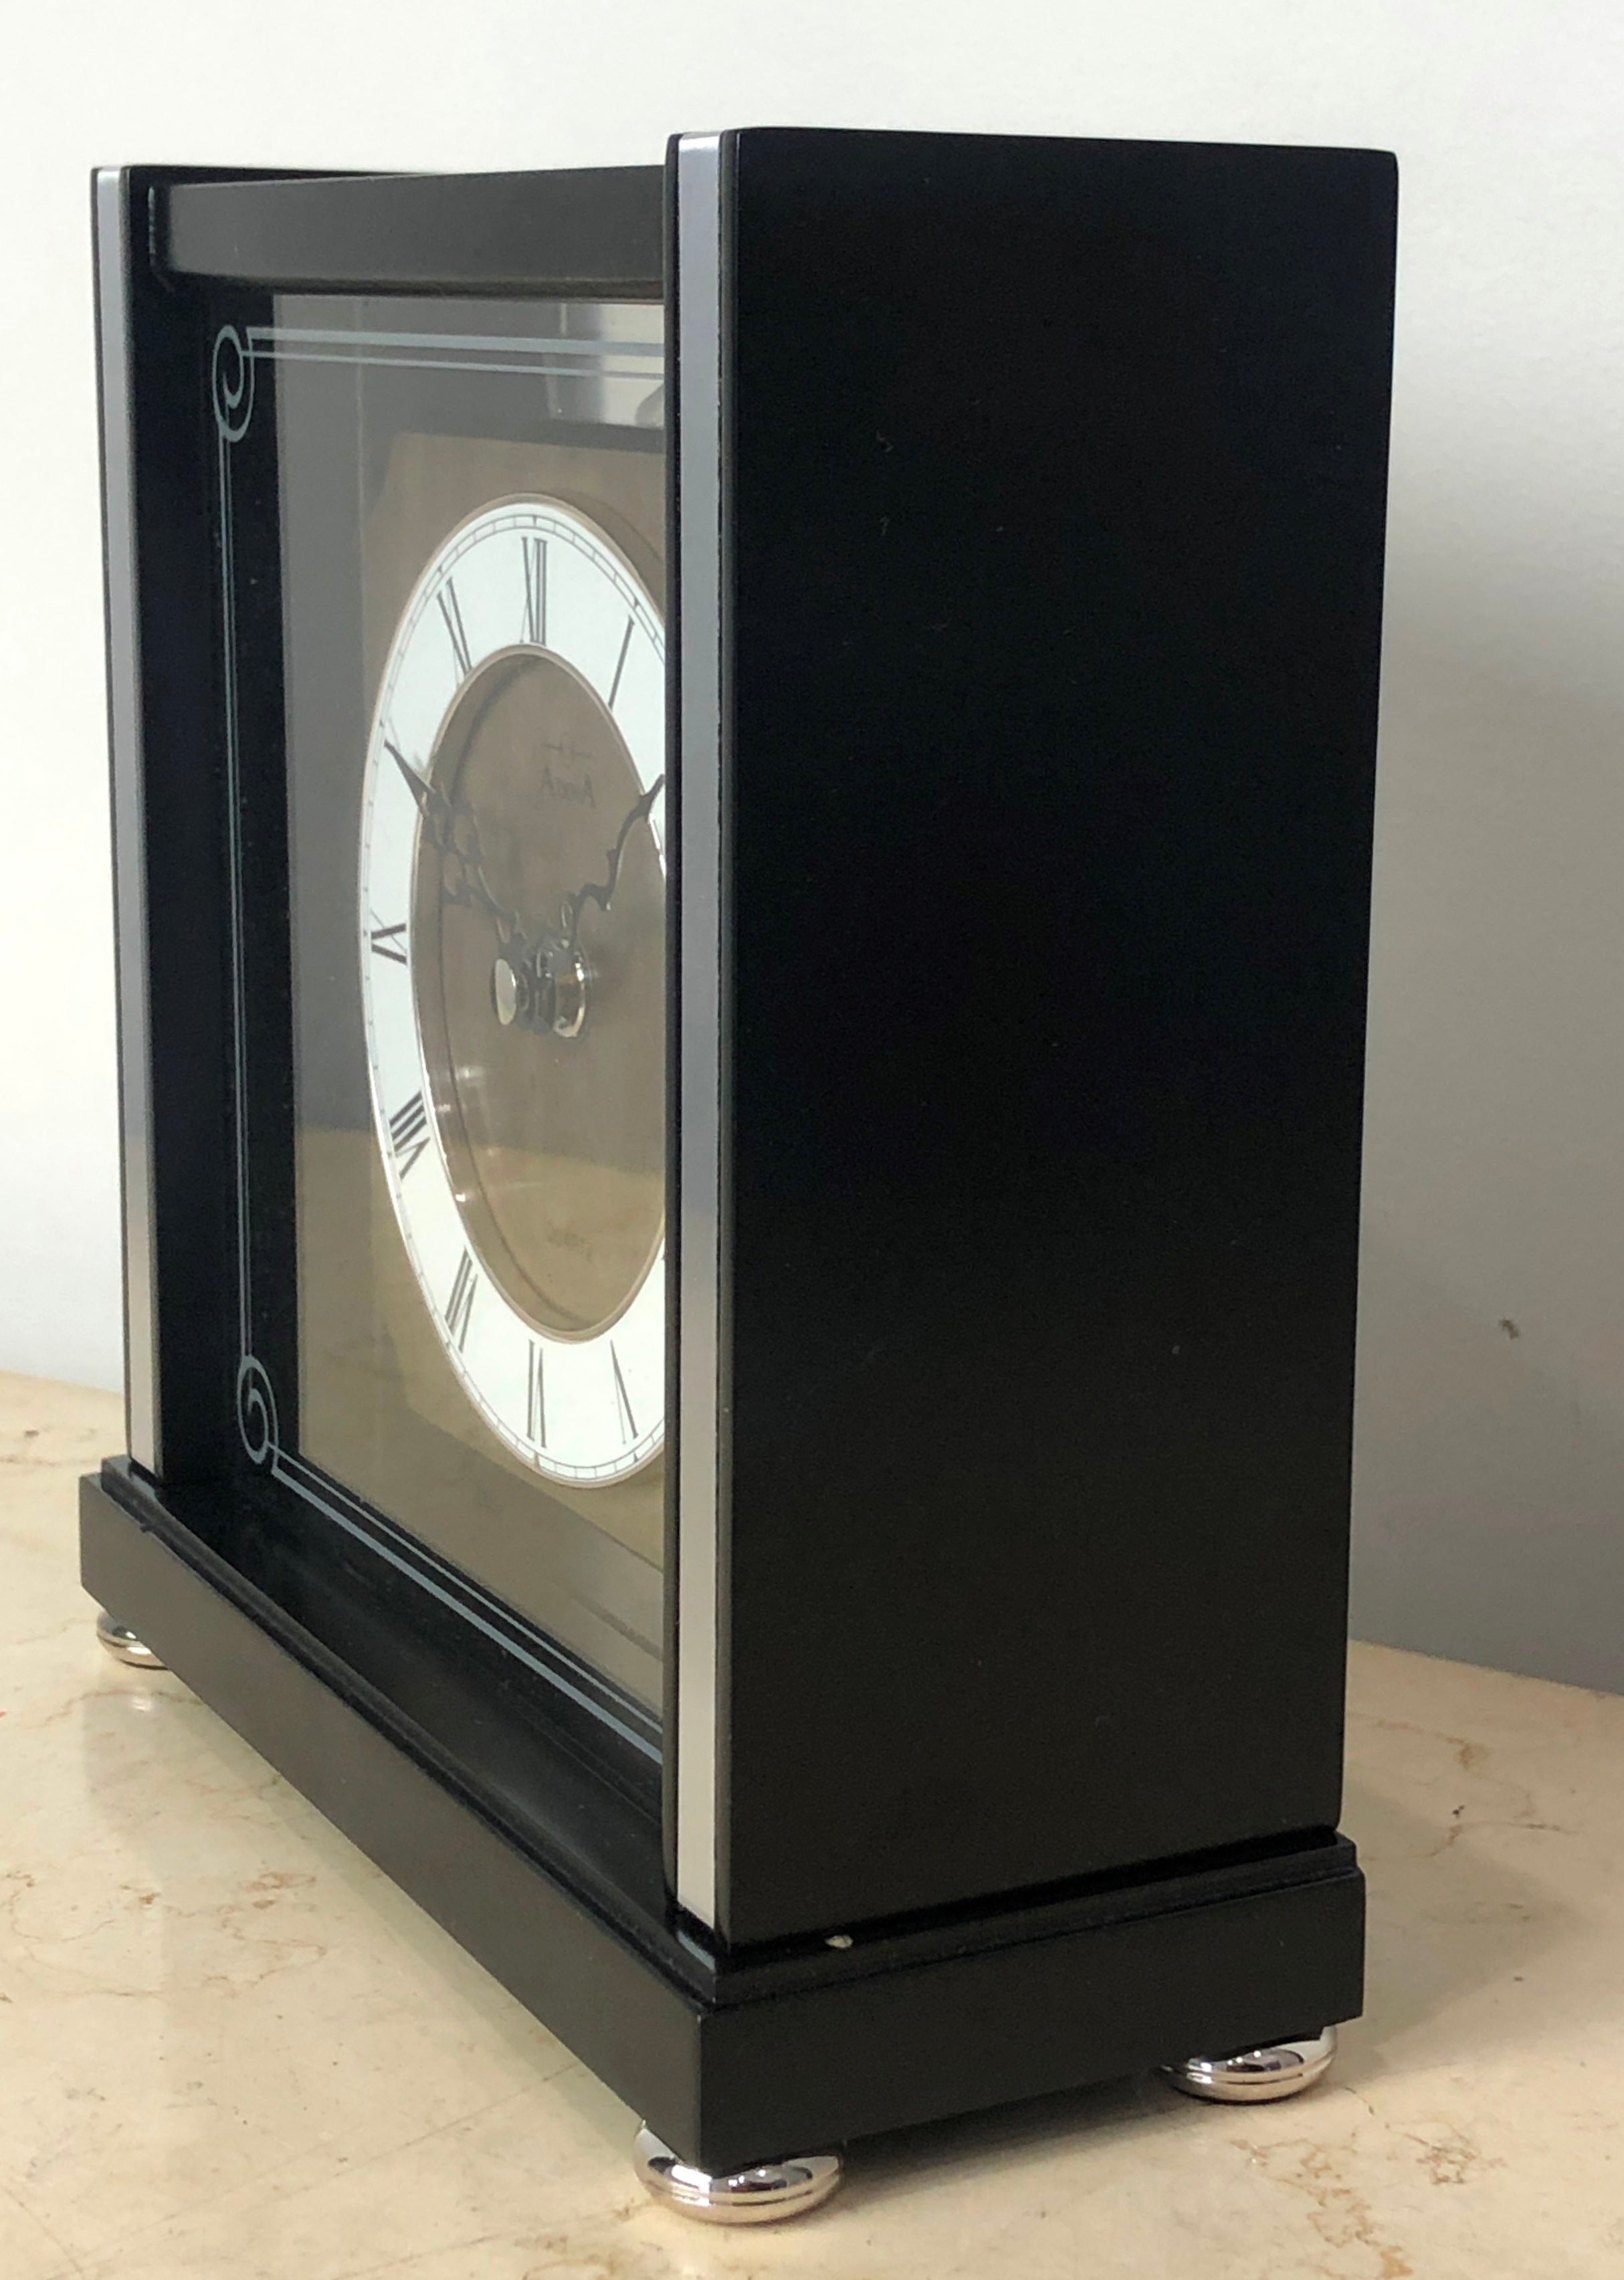 NEW Black Wooden Adina Quartz Mantel Clock | eXibit collection